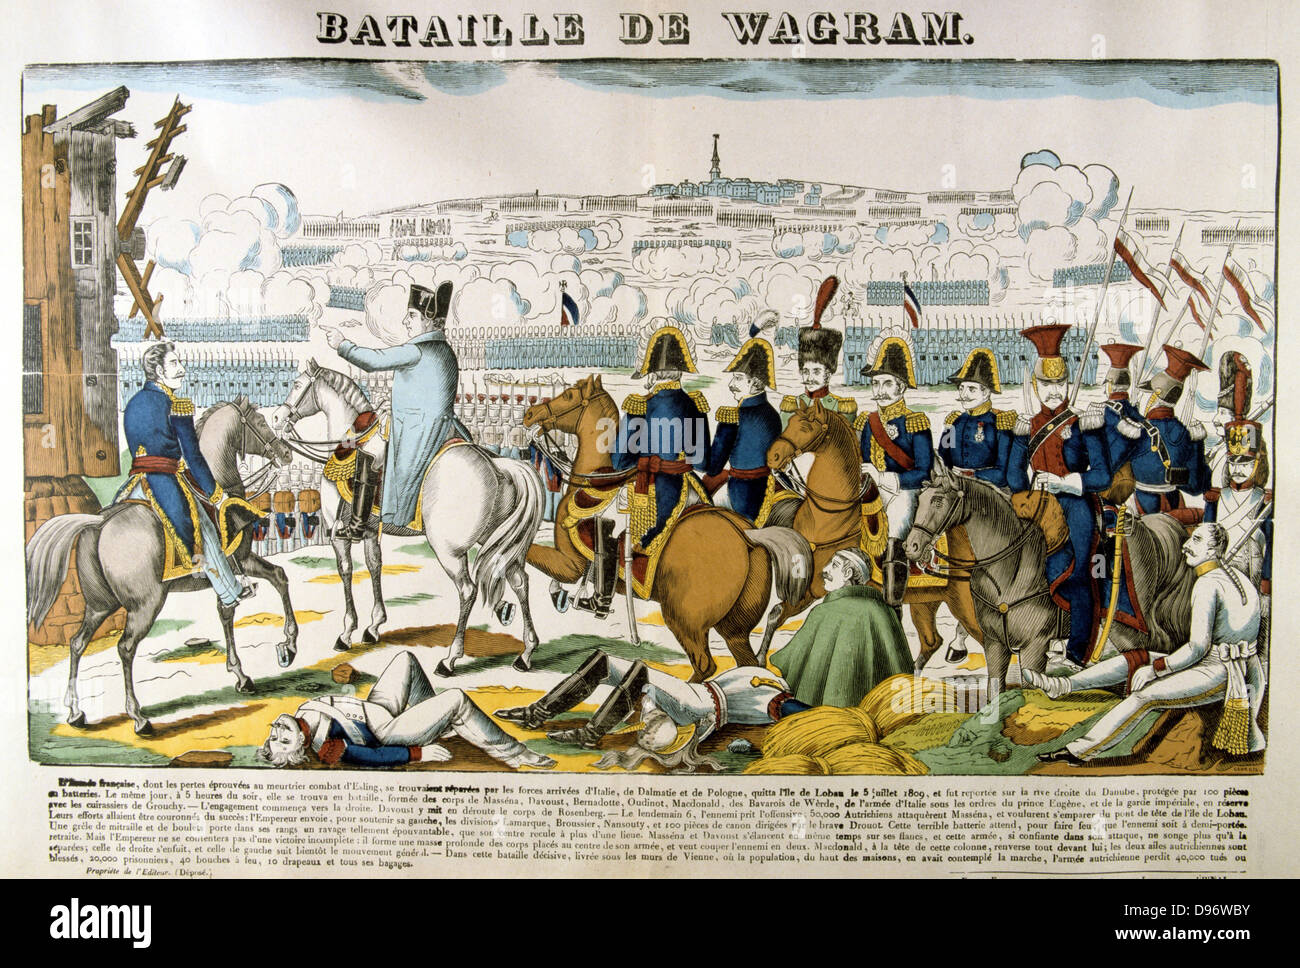 Napoleón en la batalla de Wagram, 5-6 de julio de 1809. Decisiva victoria francesa bajo Napoleón sobre los austríacos bajo el Archiduque Carlos condujo al armisticio de Zniam. Francés popular xilografía coloreada a mano. Foto de stock